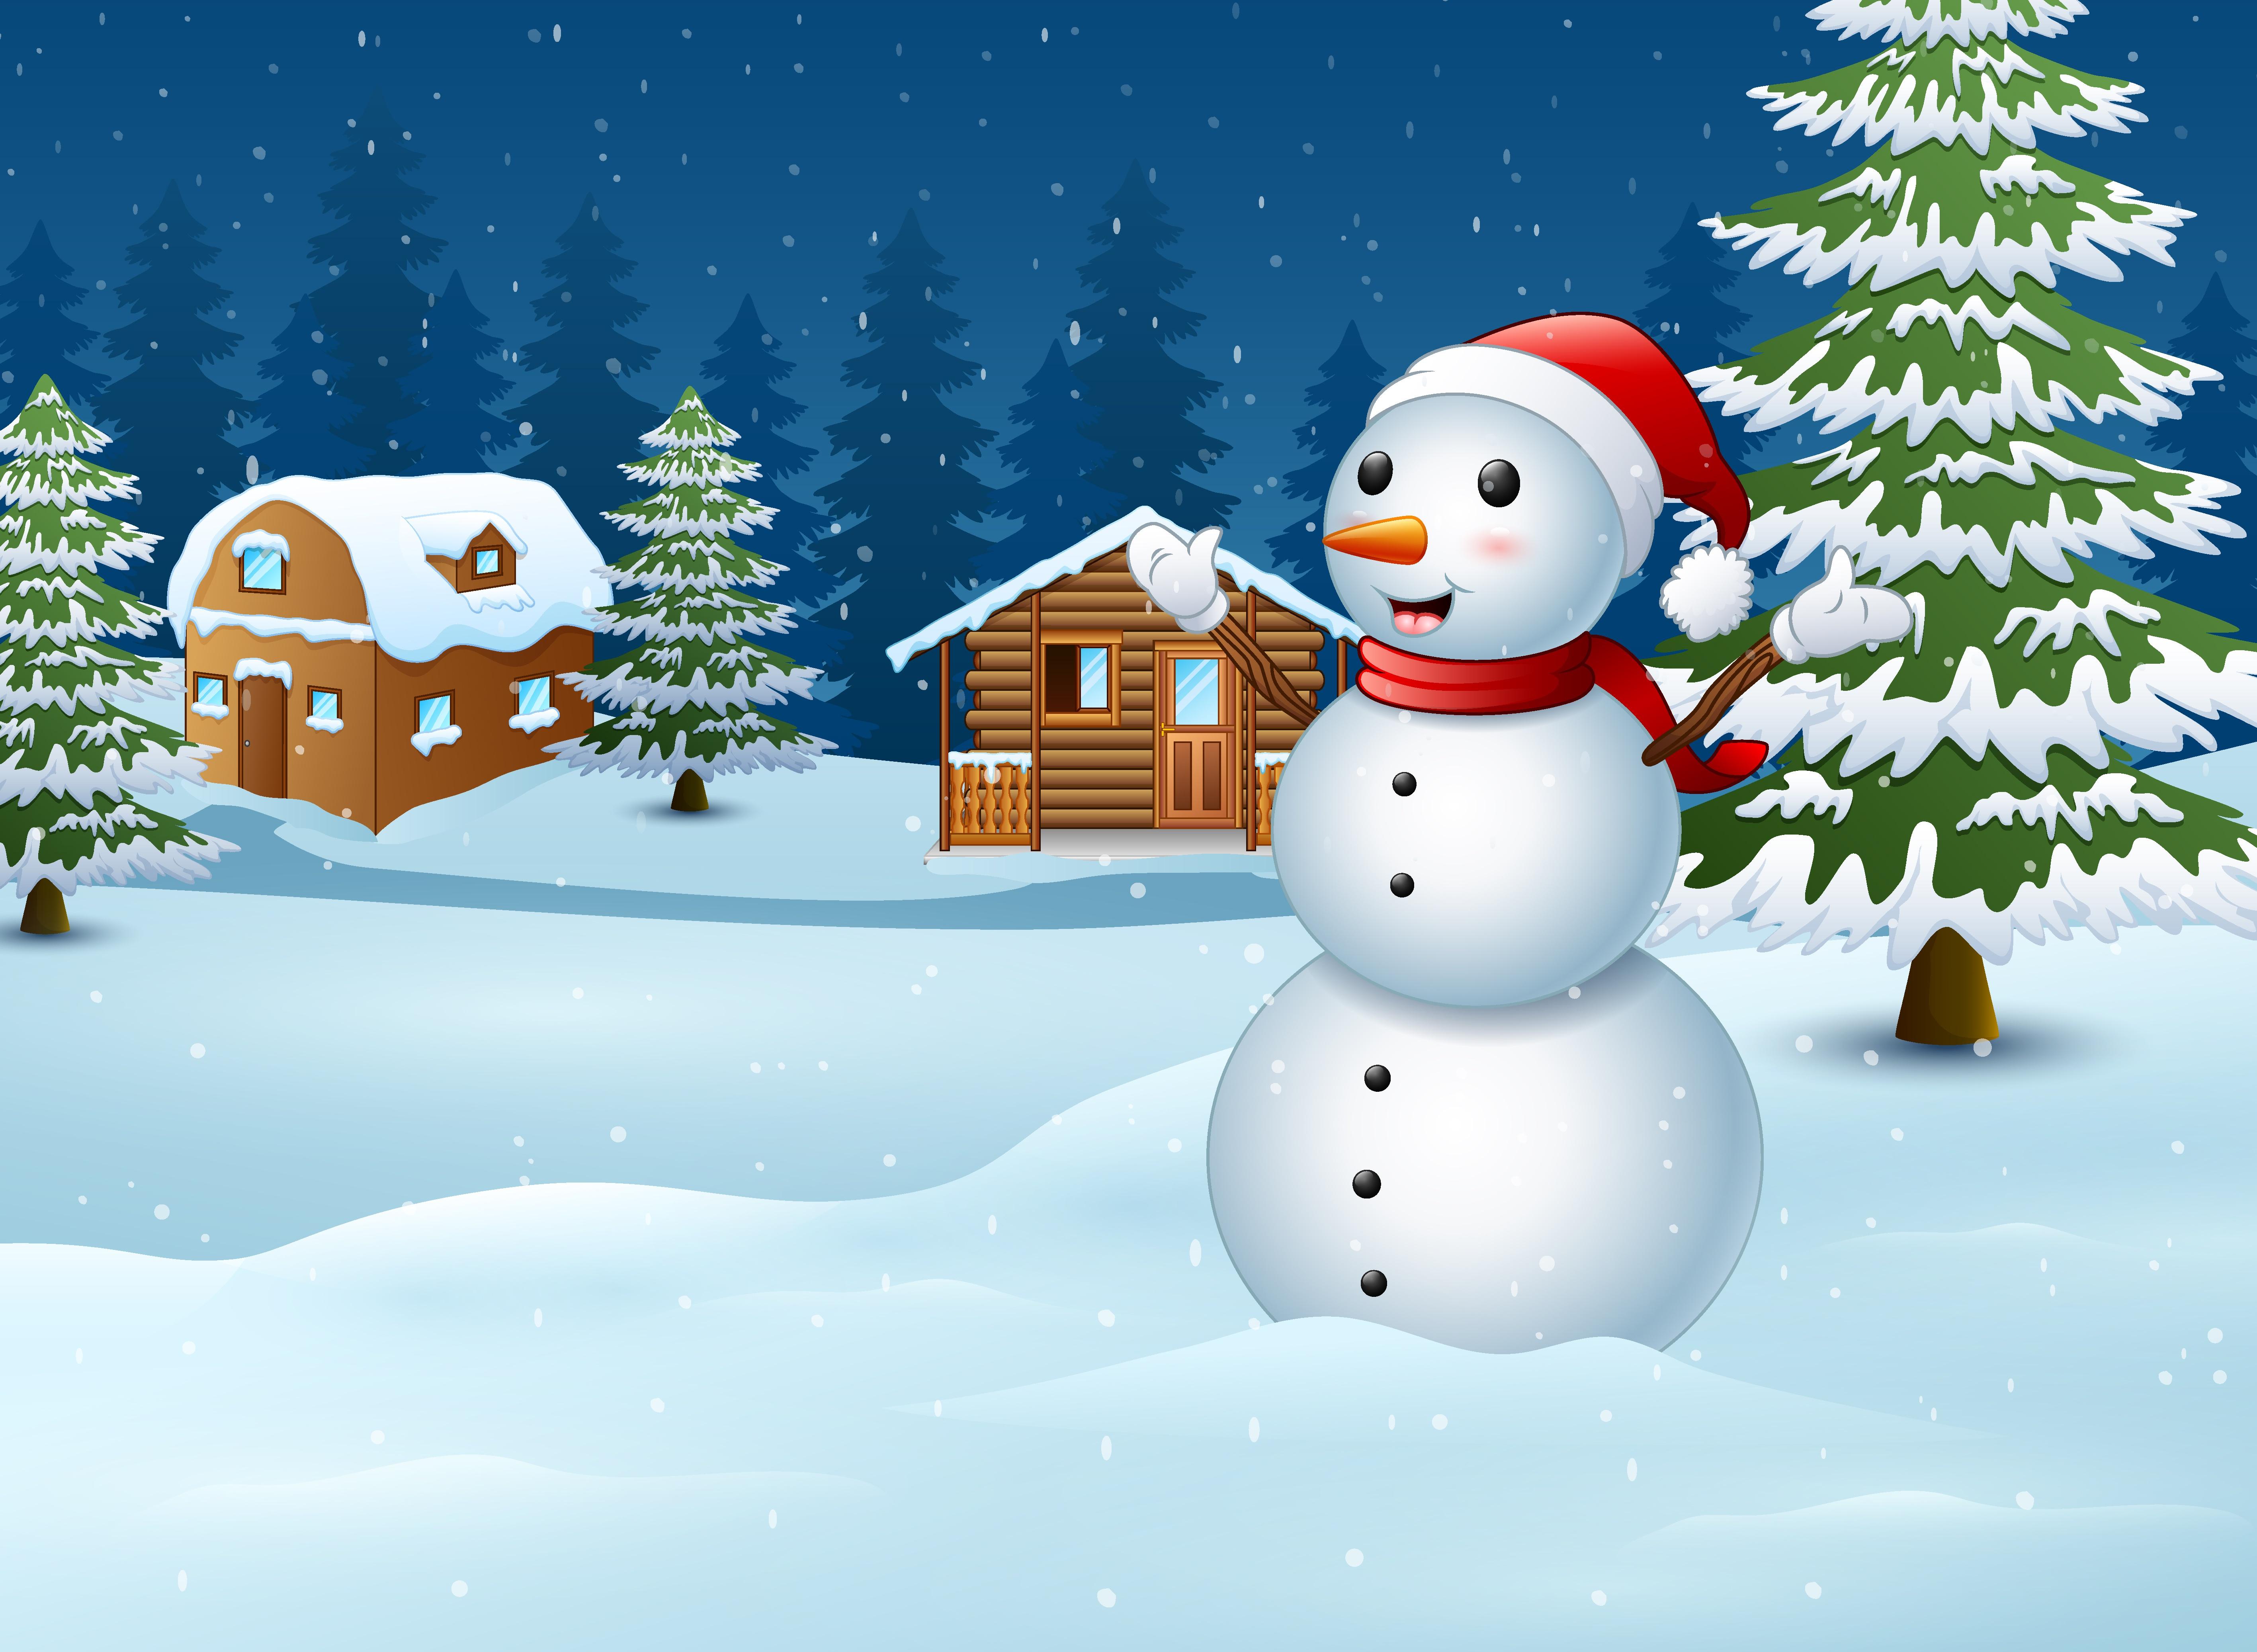 зимний снеговик стоит перед деревьями, морозный снеговик картинки,  морозный, Снеговик фон картинки и Фото для бесплатной загрузки